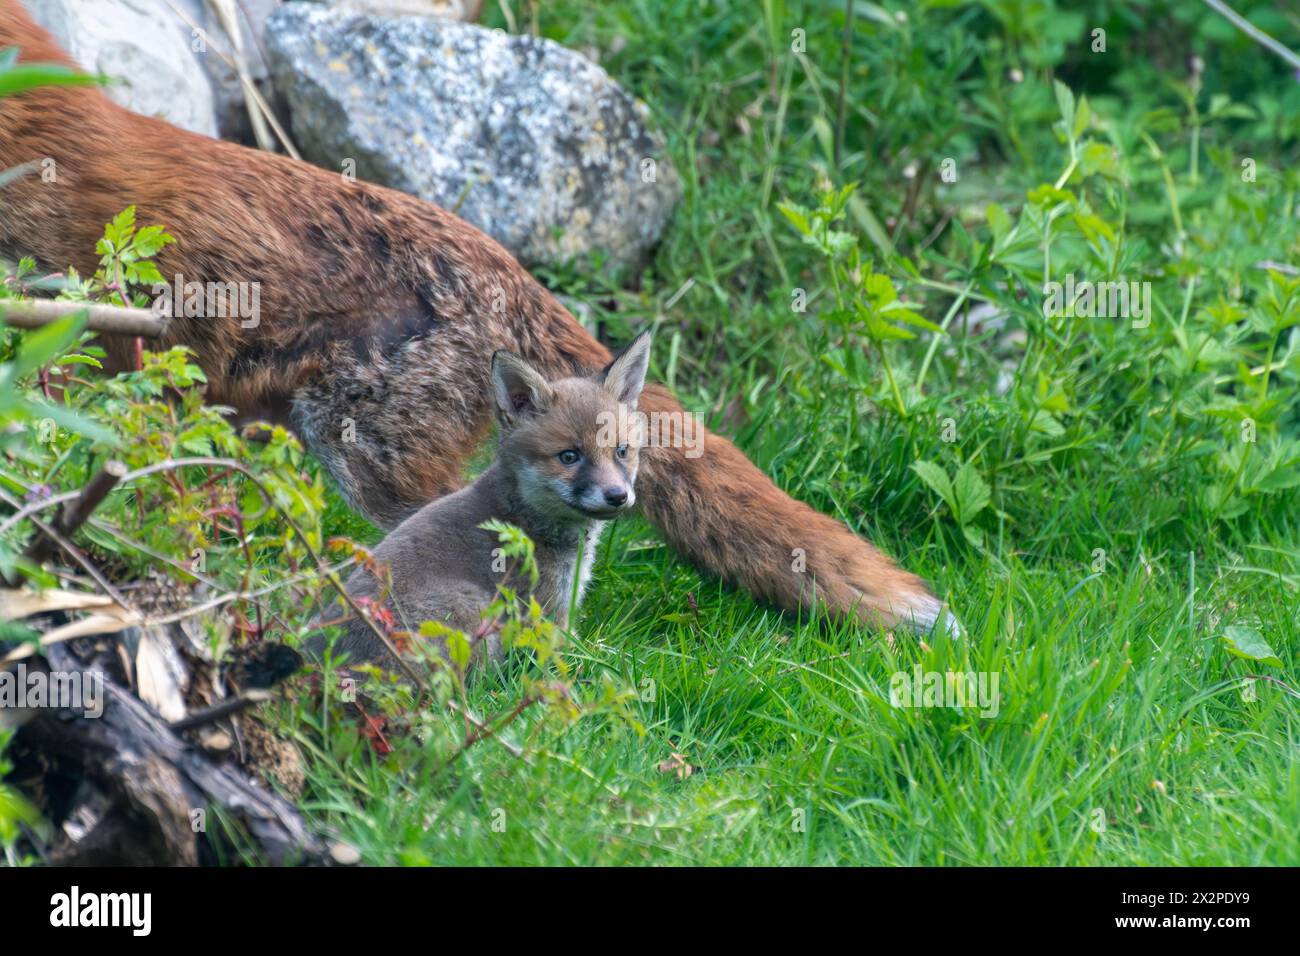 Fox Cub (Vulpes vulpes) assis à côté de sa mère, jardin de la faune, Angleterre, Royaume-Uni Banque D'Images